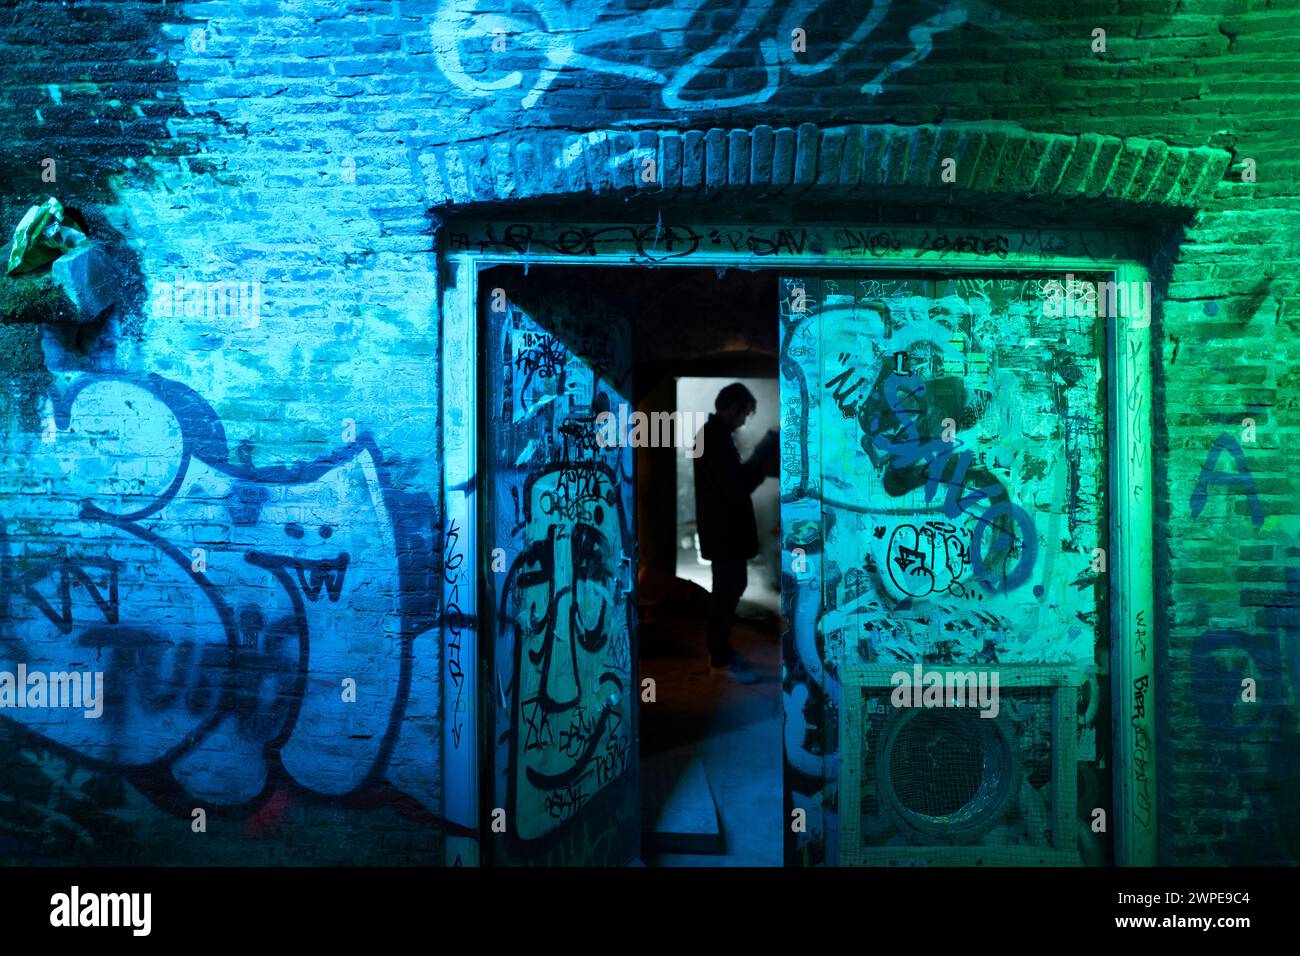 Amsterdam - Niederlande - Ca. 2019. Modischer Platz und eine Männersilhouette im Vordergrund. Alte Graffiti-Wände, blau beleuchtet. Stockfoto